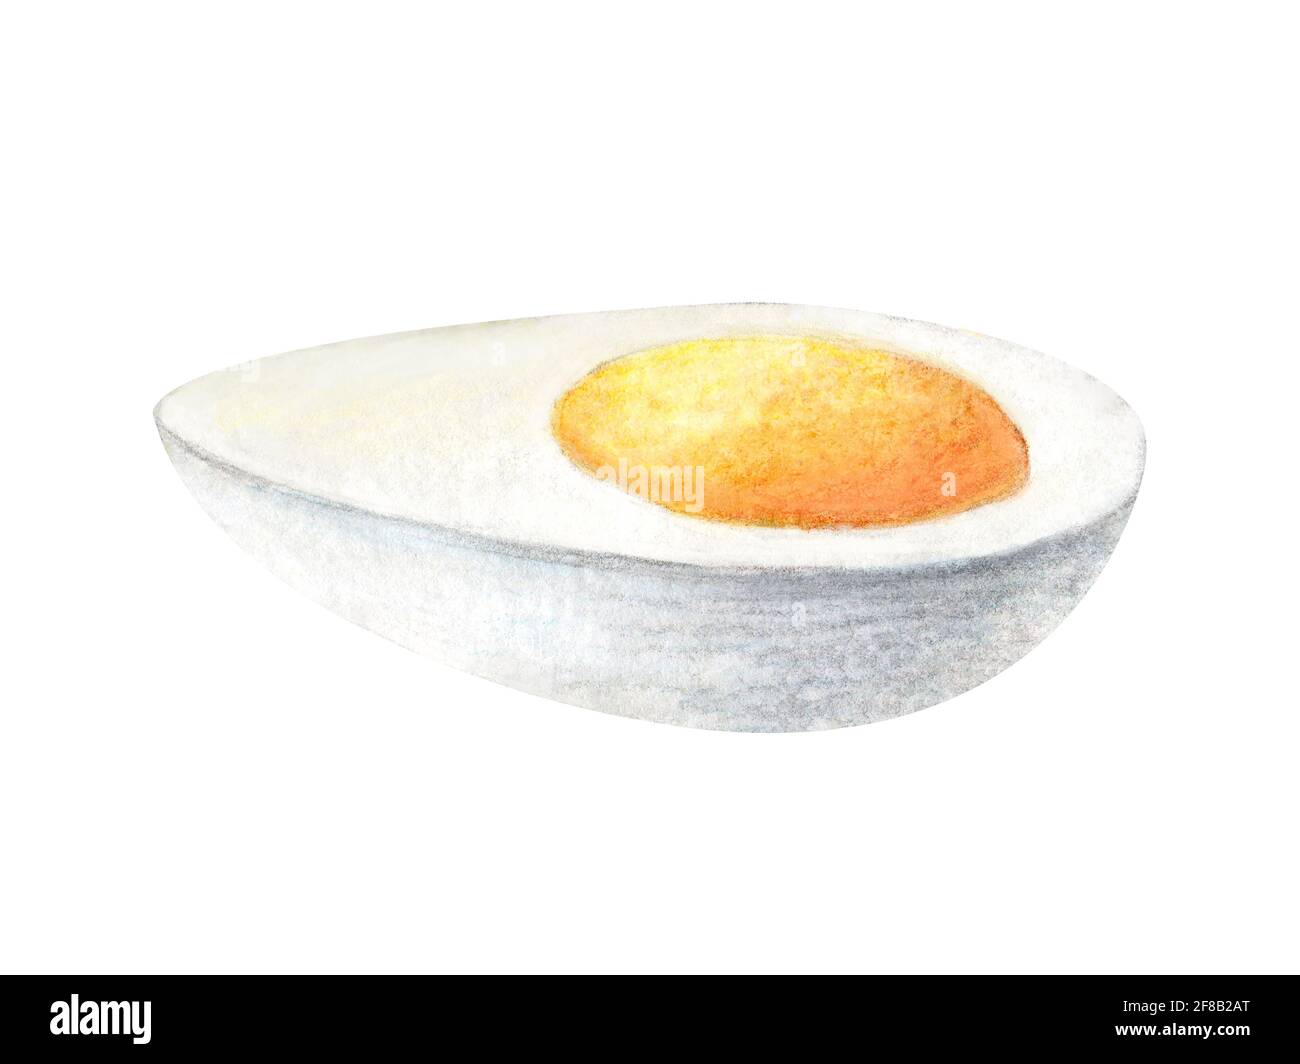 Peinture aquarelle d'œufs brouillés bouillis illustration isolée sur fond blanc. La moitié de l'omelette pour le petit déjeuner. Ingrédients dessinés à la main pour le menu du restaurant, le reçu, l'étiquette et le brunch. Banque D'Images